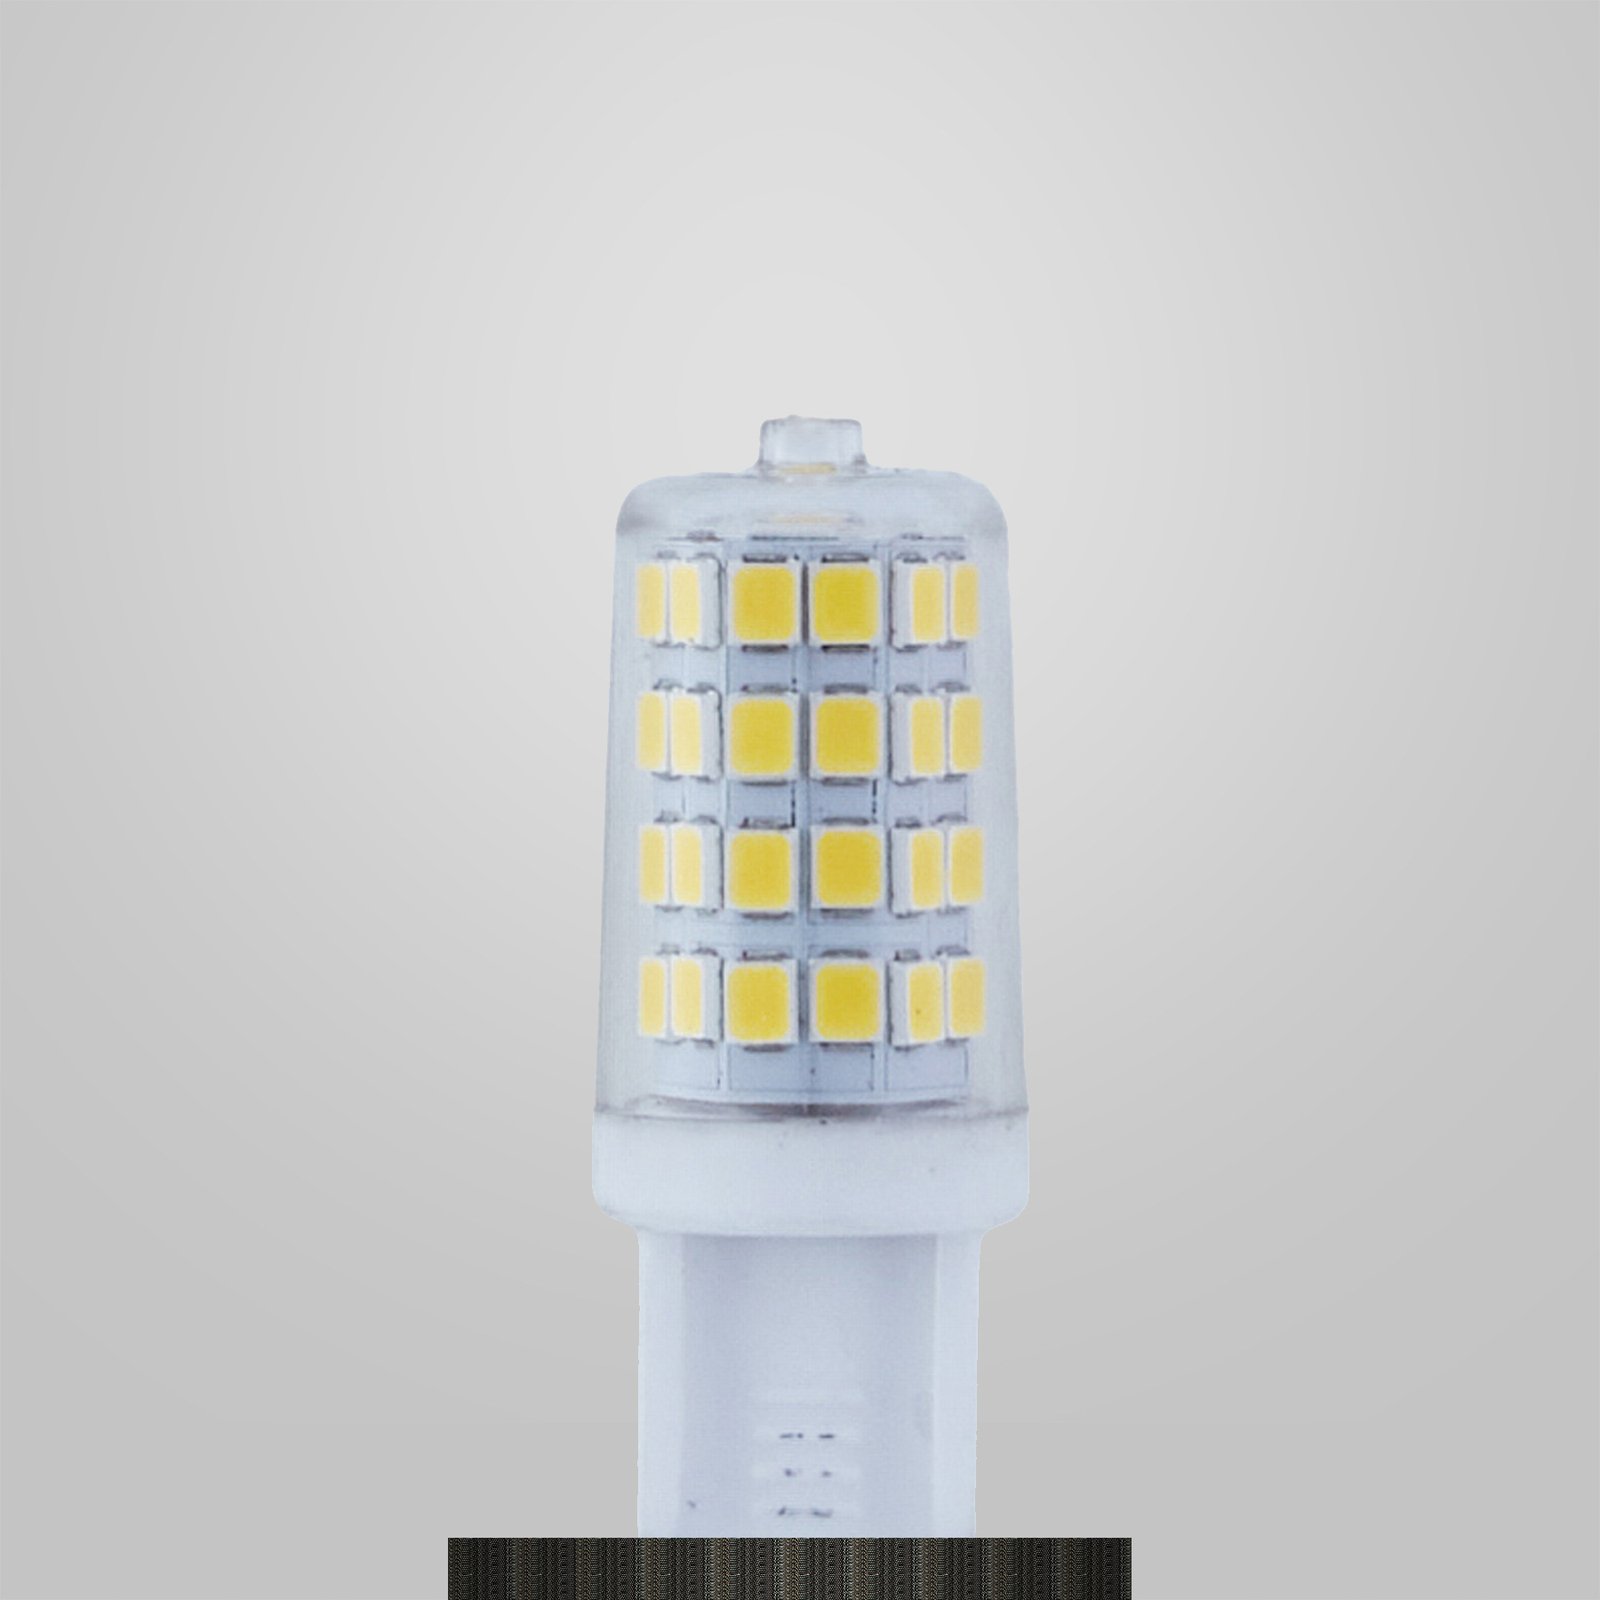 Lindby Ampoule à broche LED, G9, 3 W, transparent, 4.000 K, 350 lm